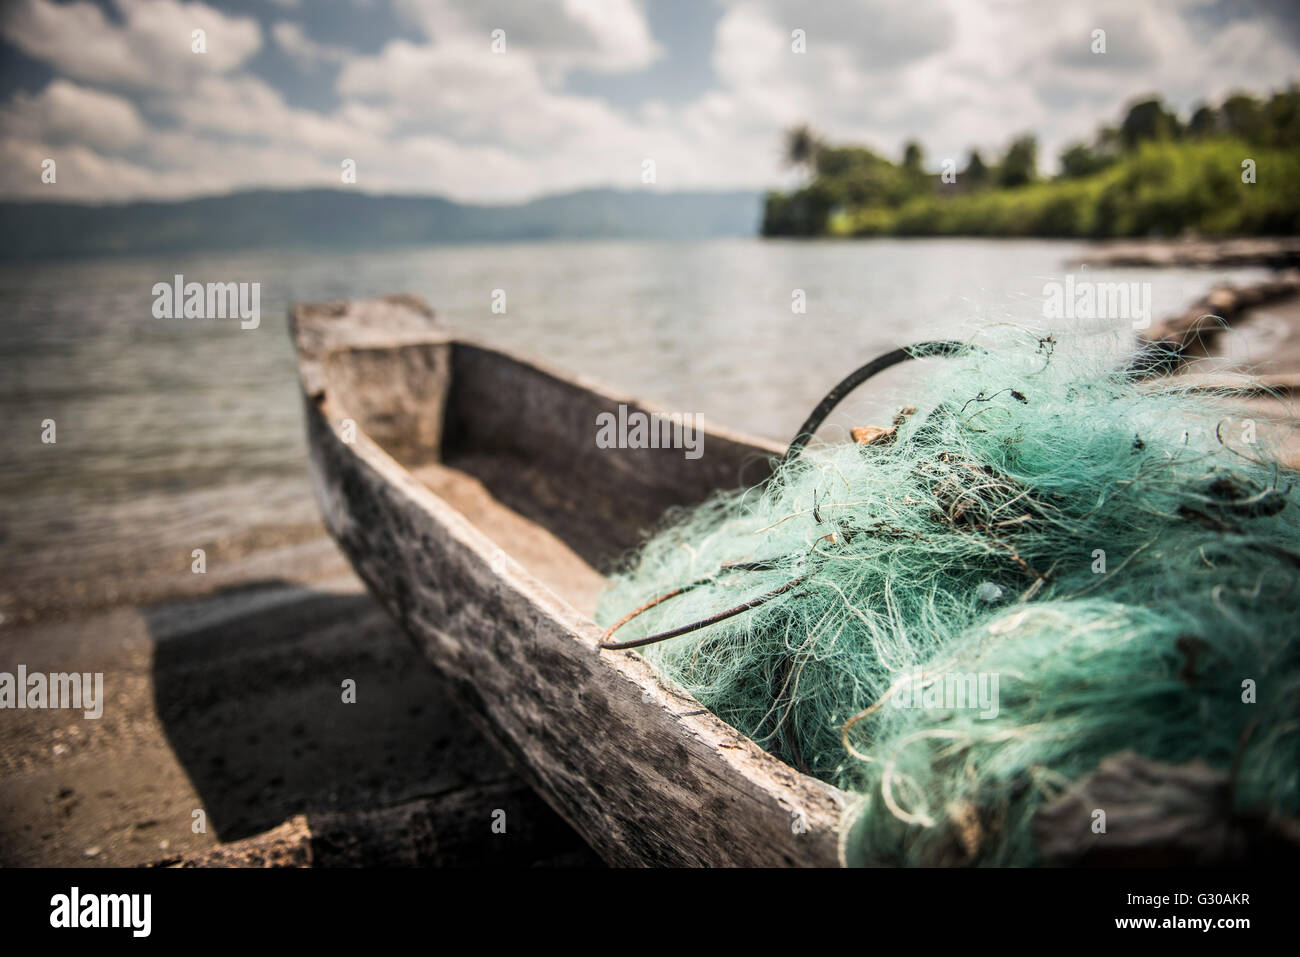 Les filets de pêche dans un bateau de pêche sur le Lac Toba (Danau Toba), au nord de Sumatra, Indonésie, Asie du Sud, Asie Banque D'Images